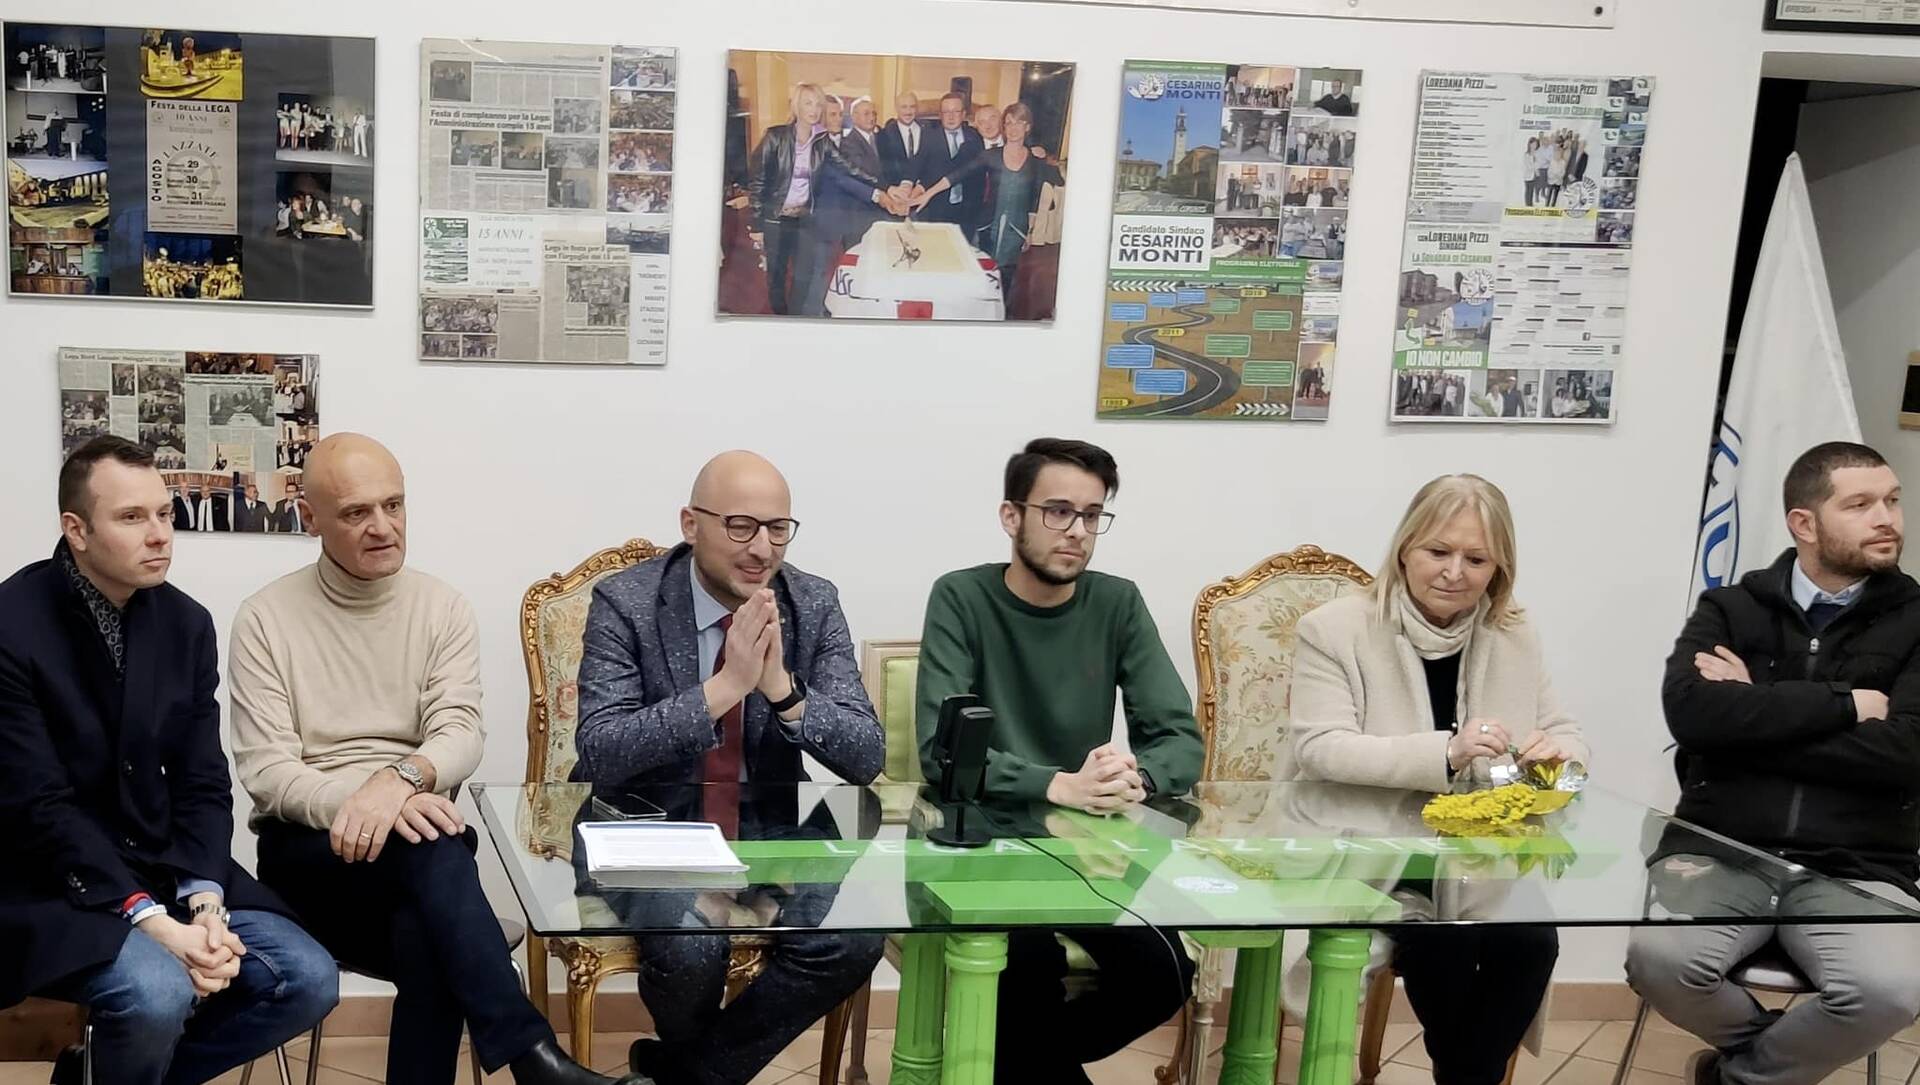 Andrea Monti candidato sindaco a Lazzate. Con una coalizione di centrodestra